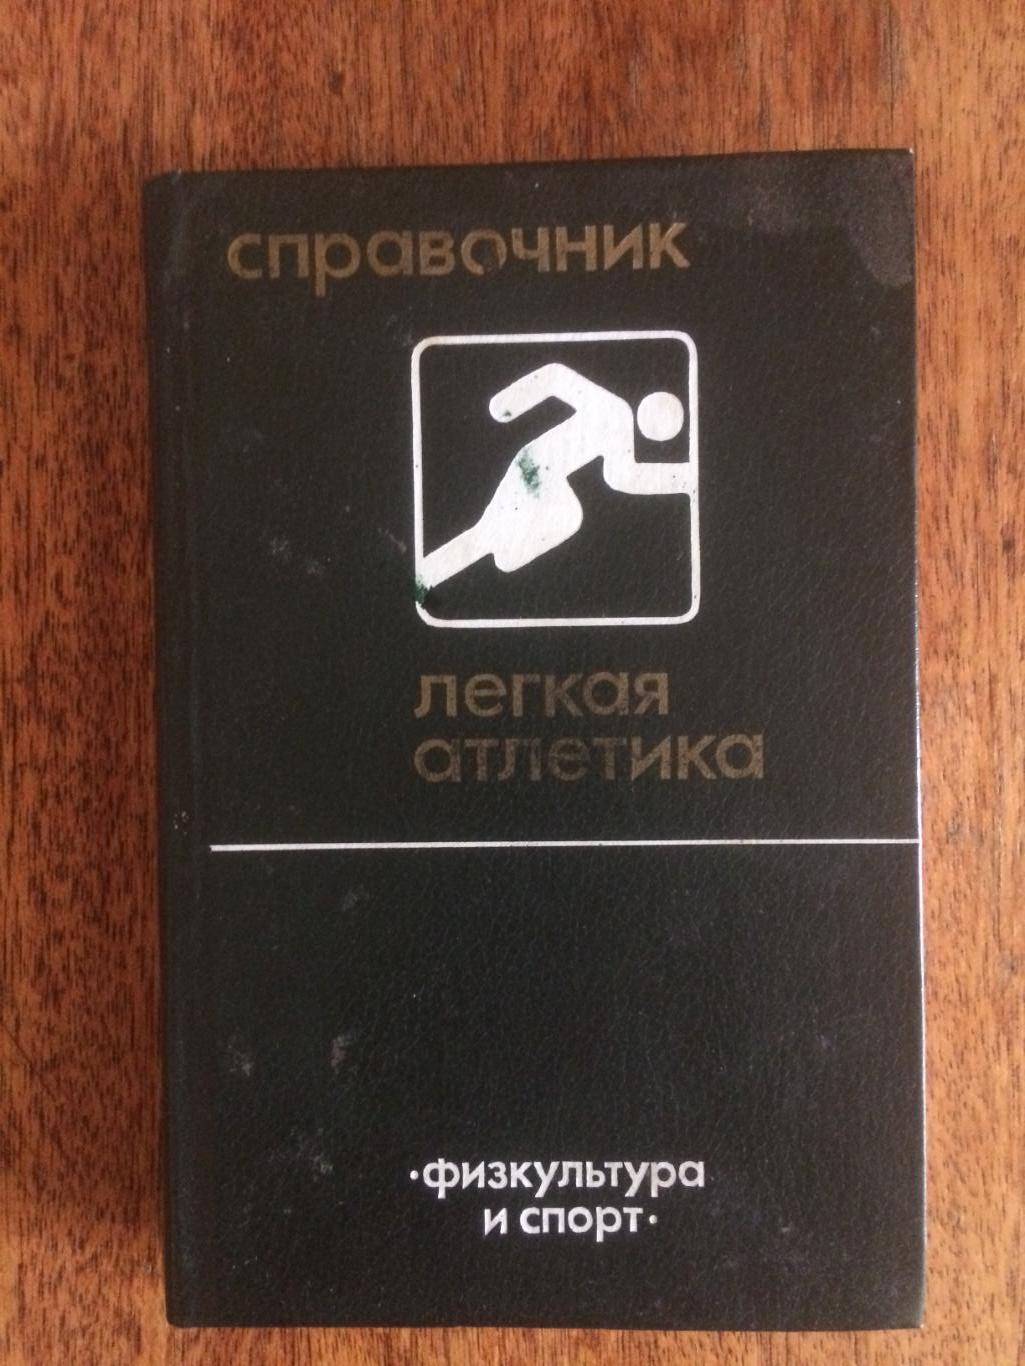 Справочник Легкая атлетика ФИС 1983